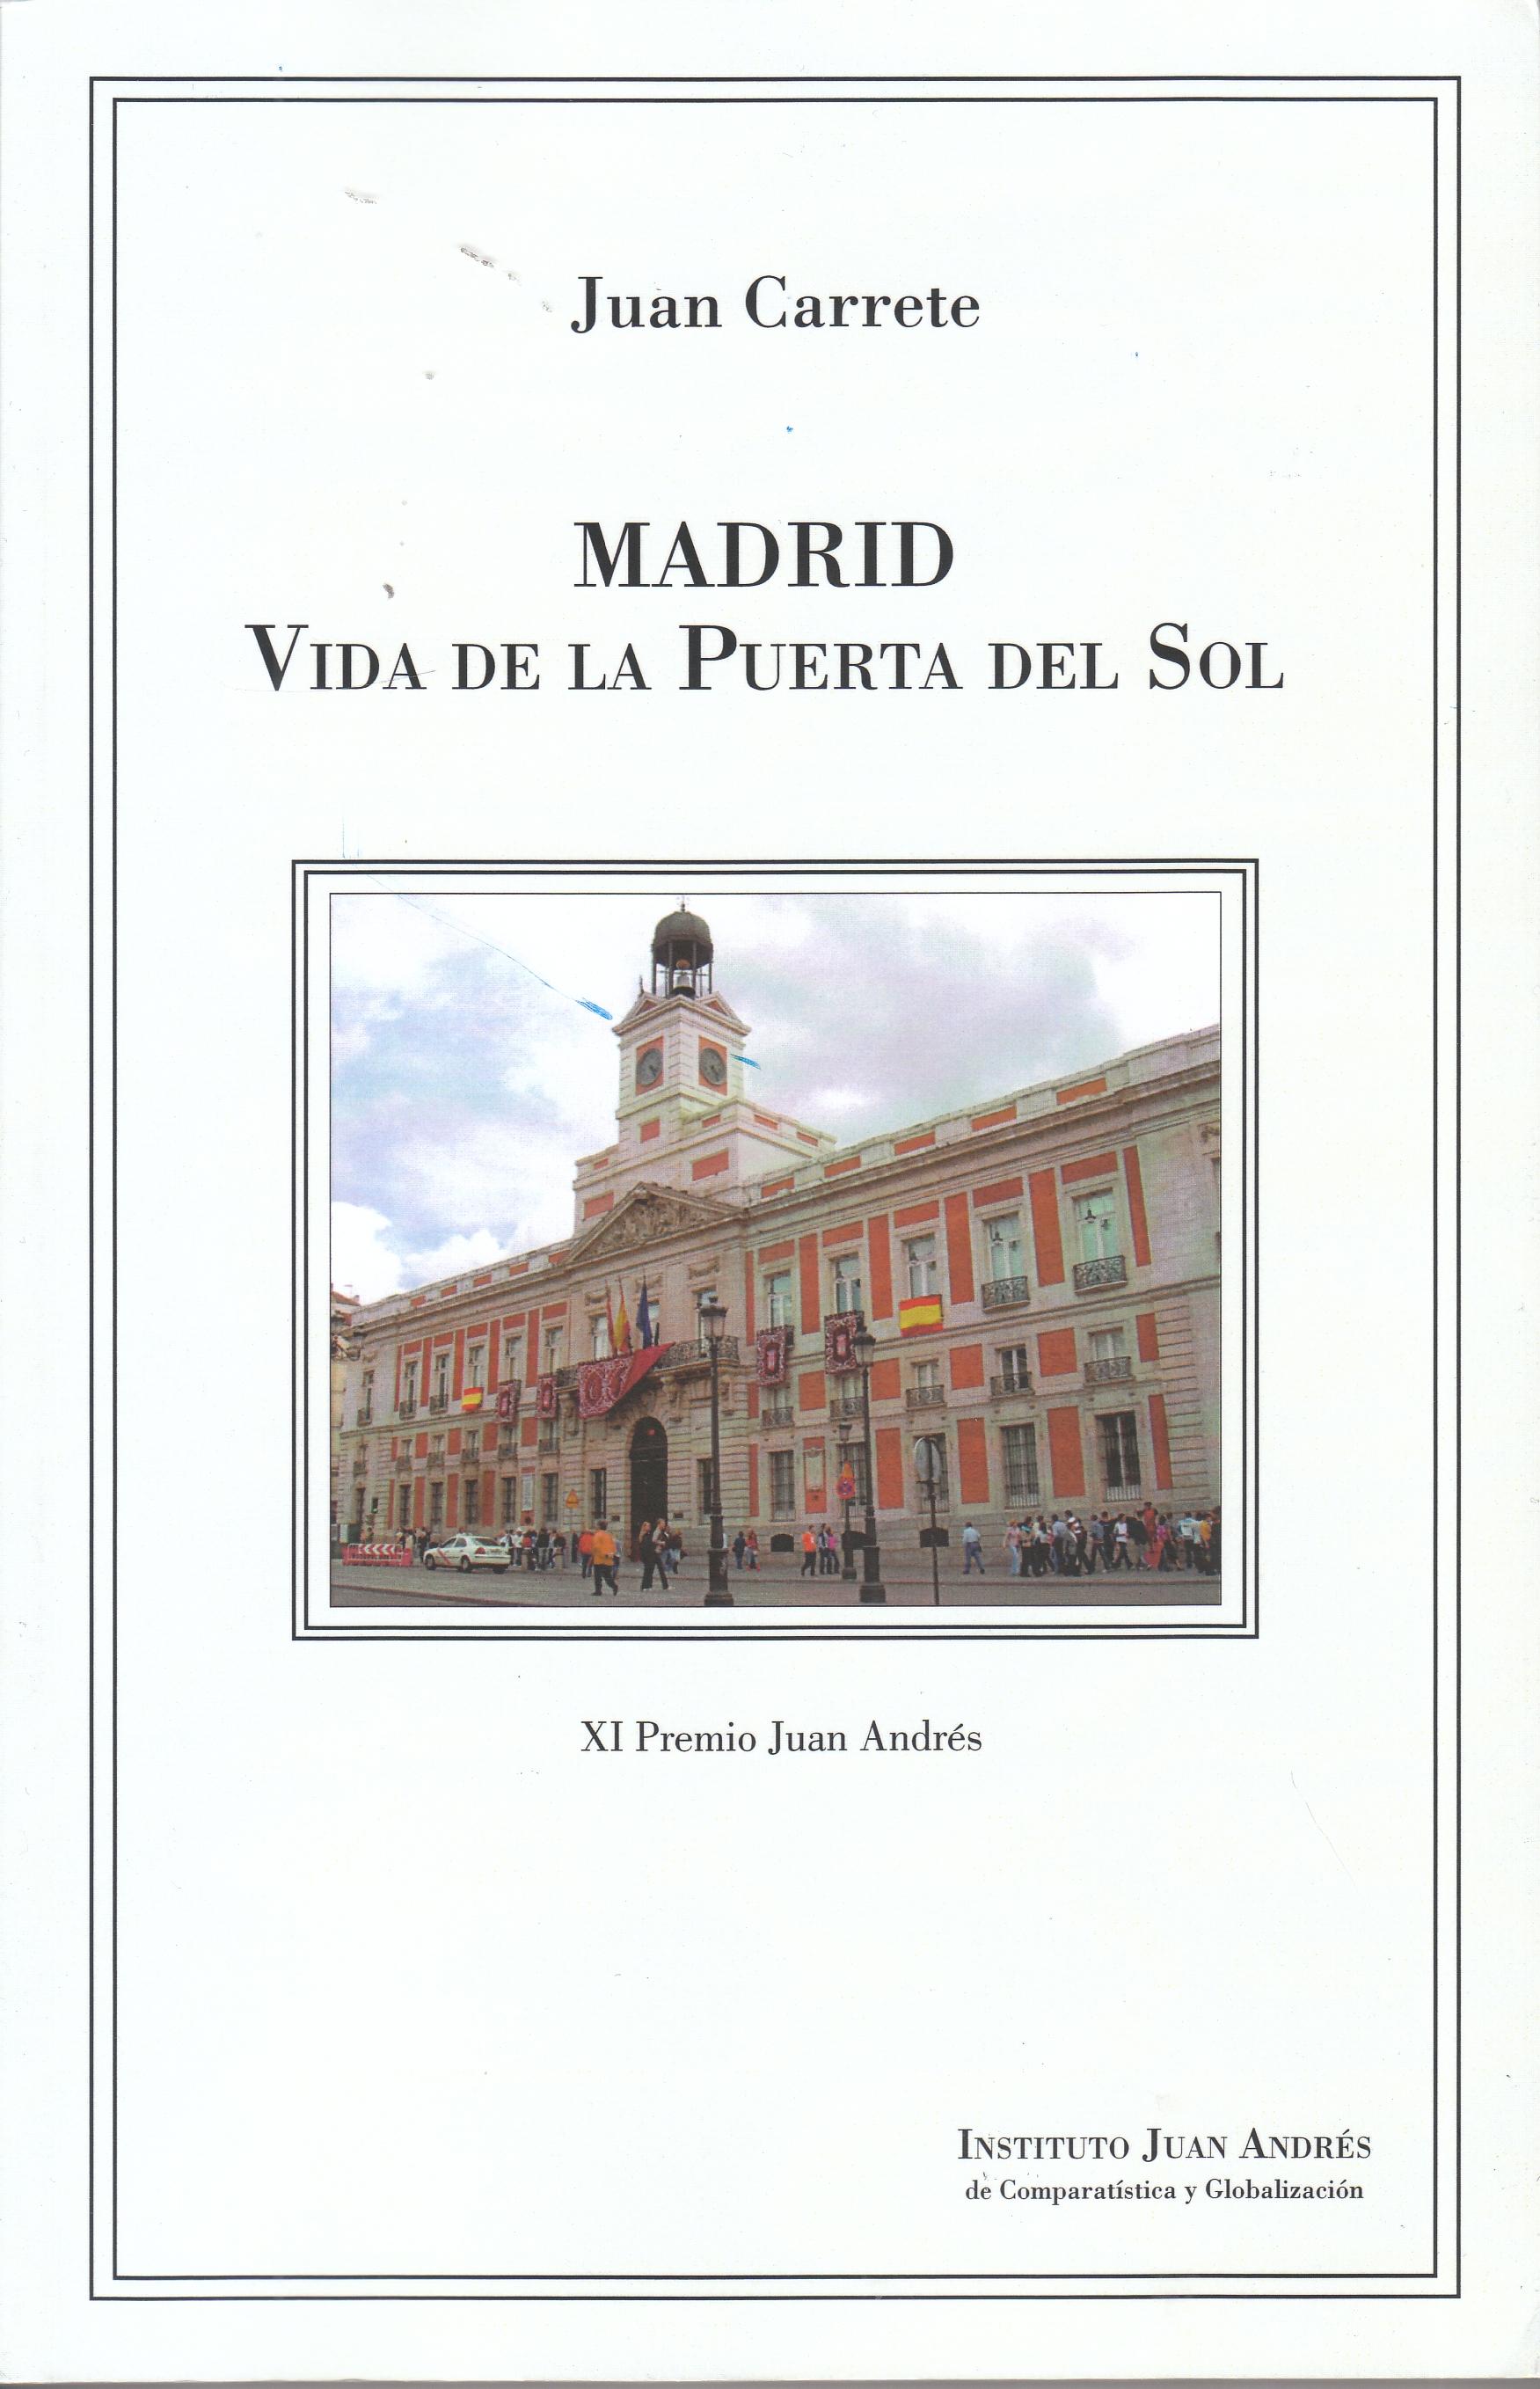 Madrid "Vida de la Puerta del Sol"